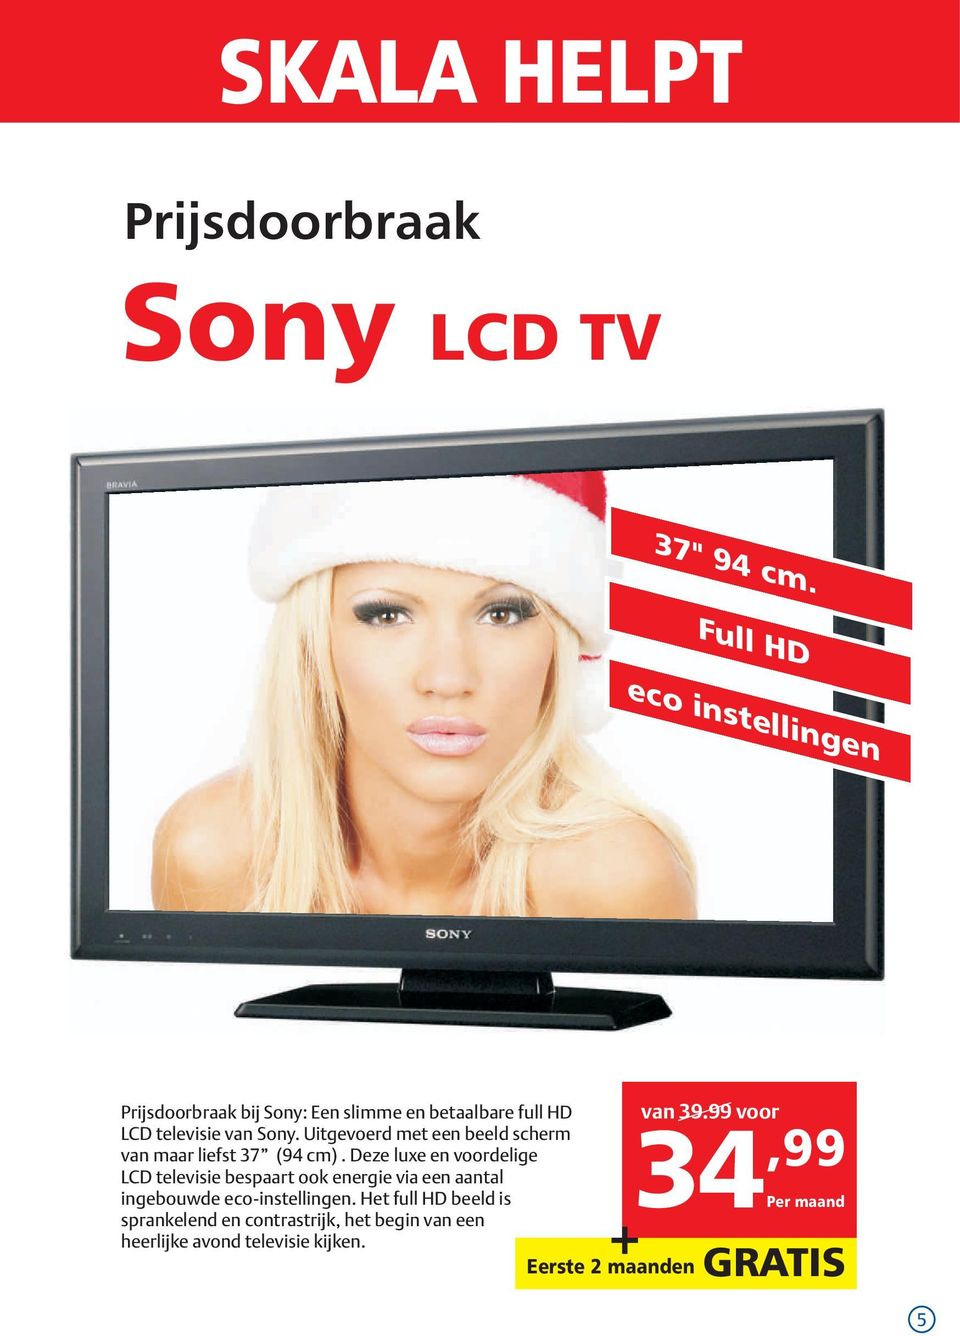 99 voor LCD televisie van Sony. Uitgevoerd met een beeld scherm van maar liefst 37 (94 cm).